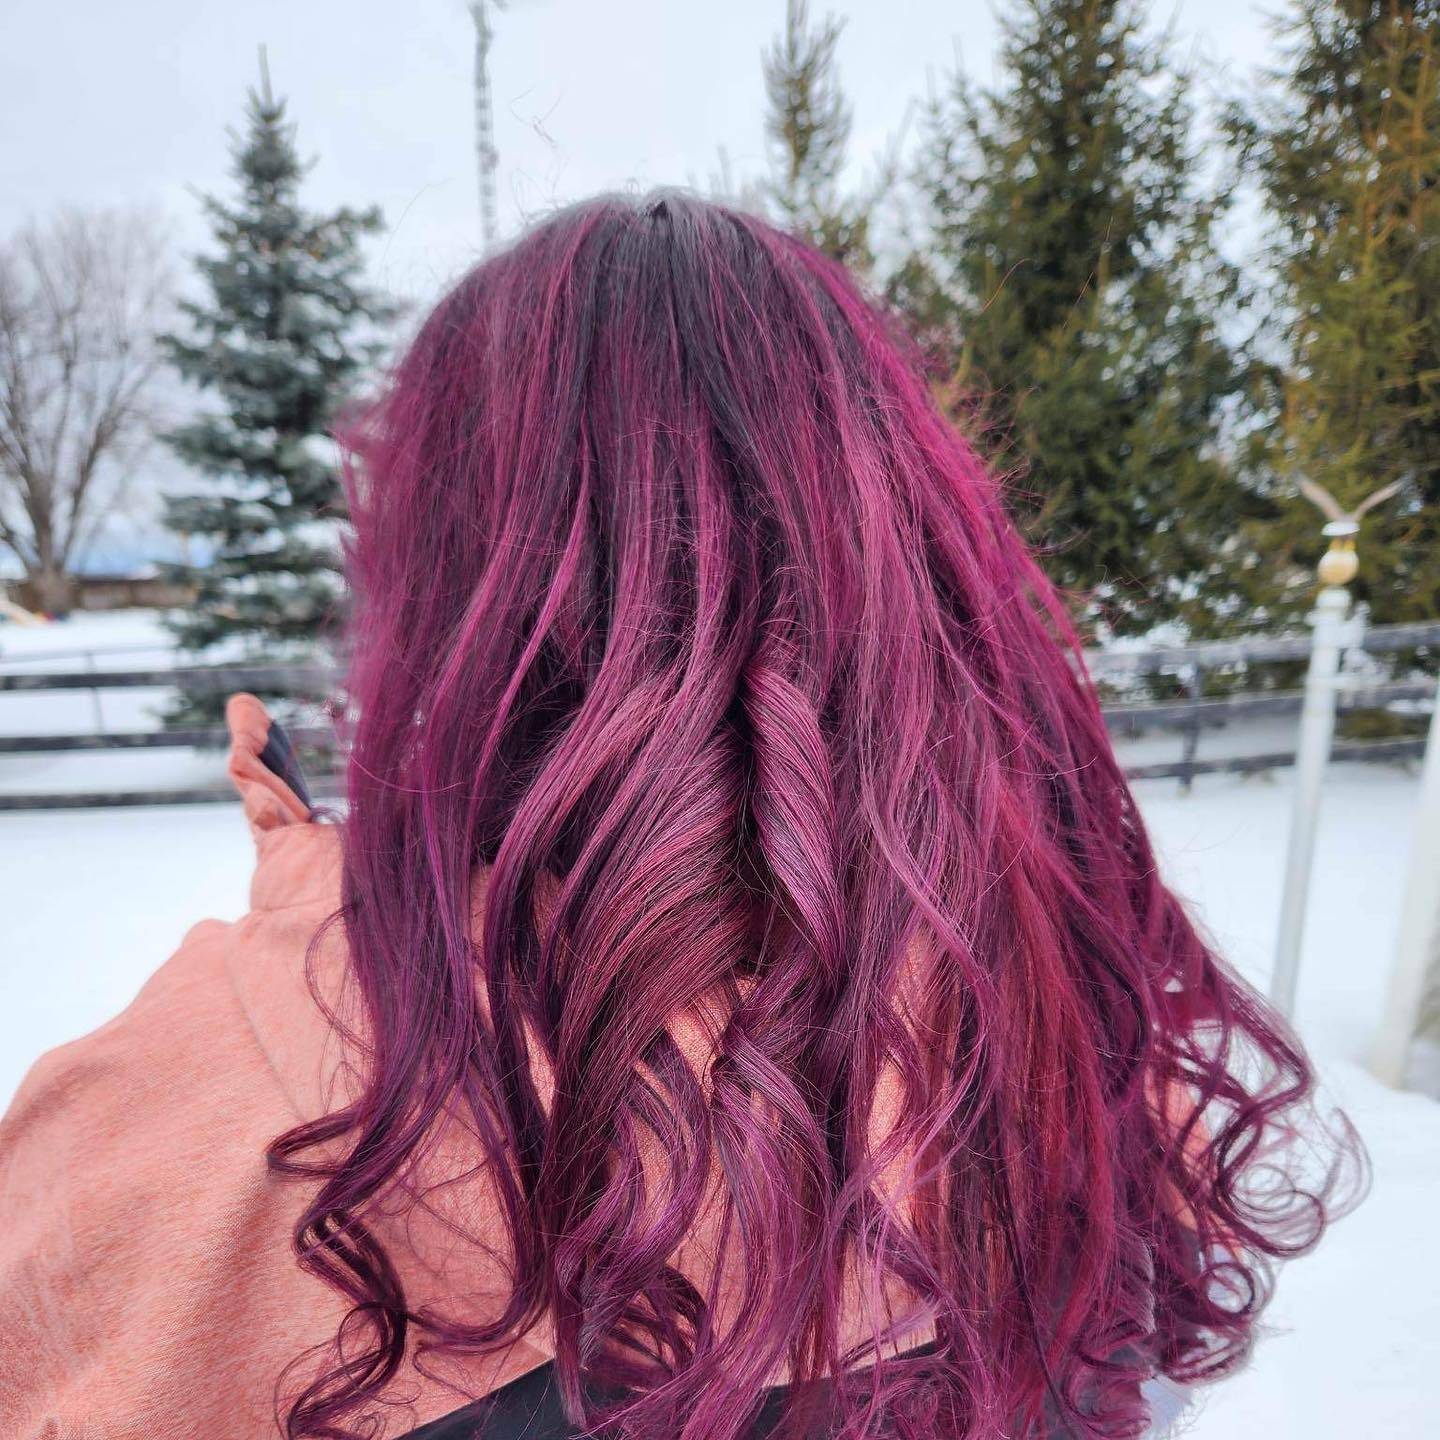 Burgundy hair color 393 burgundy hair color | burgundy hair color for women | burgundy hair color highlights Burgundy Hair Color